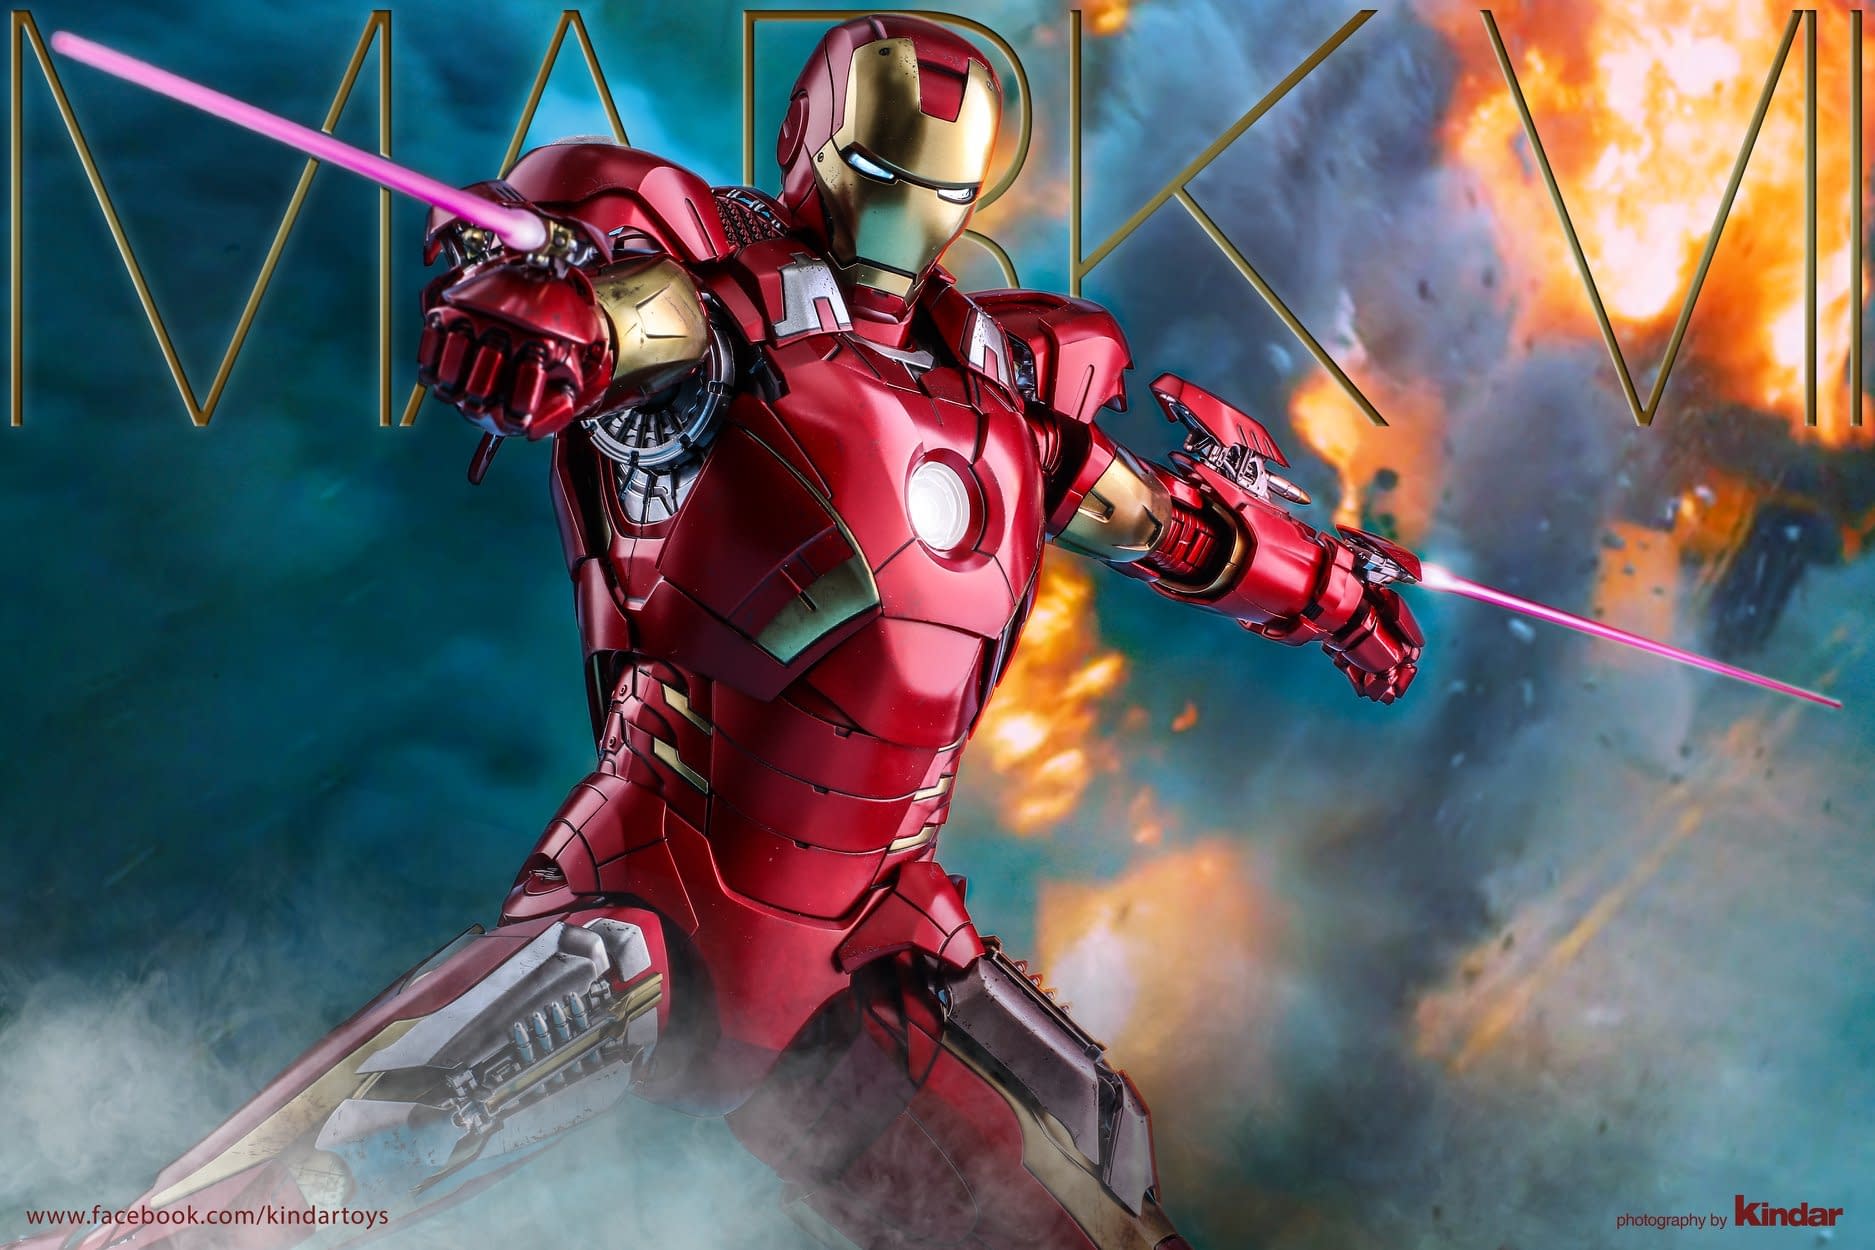 Hot Toys Celebrates Their 500th Creation with Iron Man Mark VII